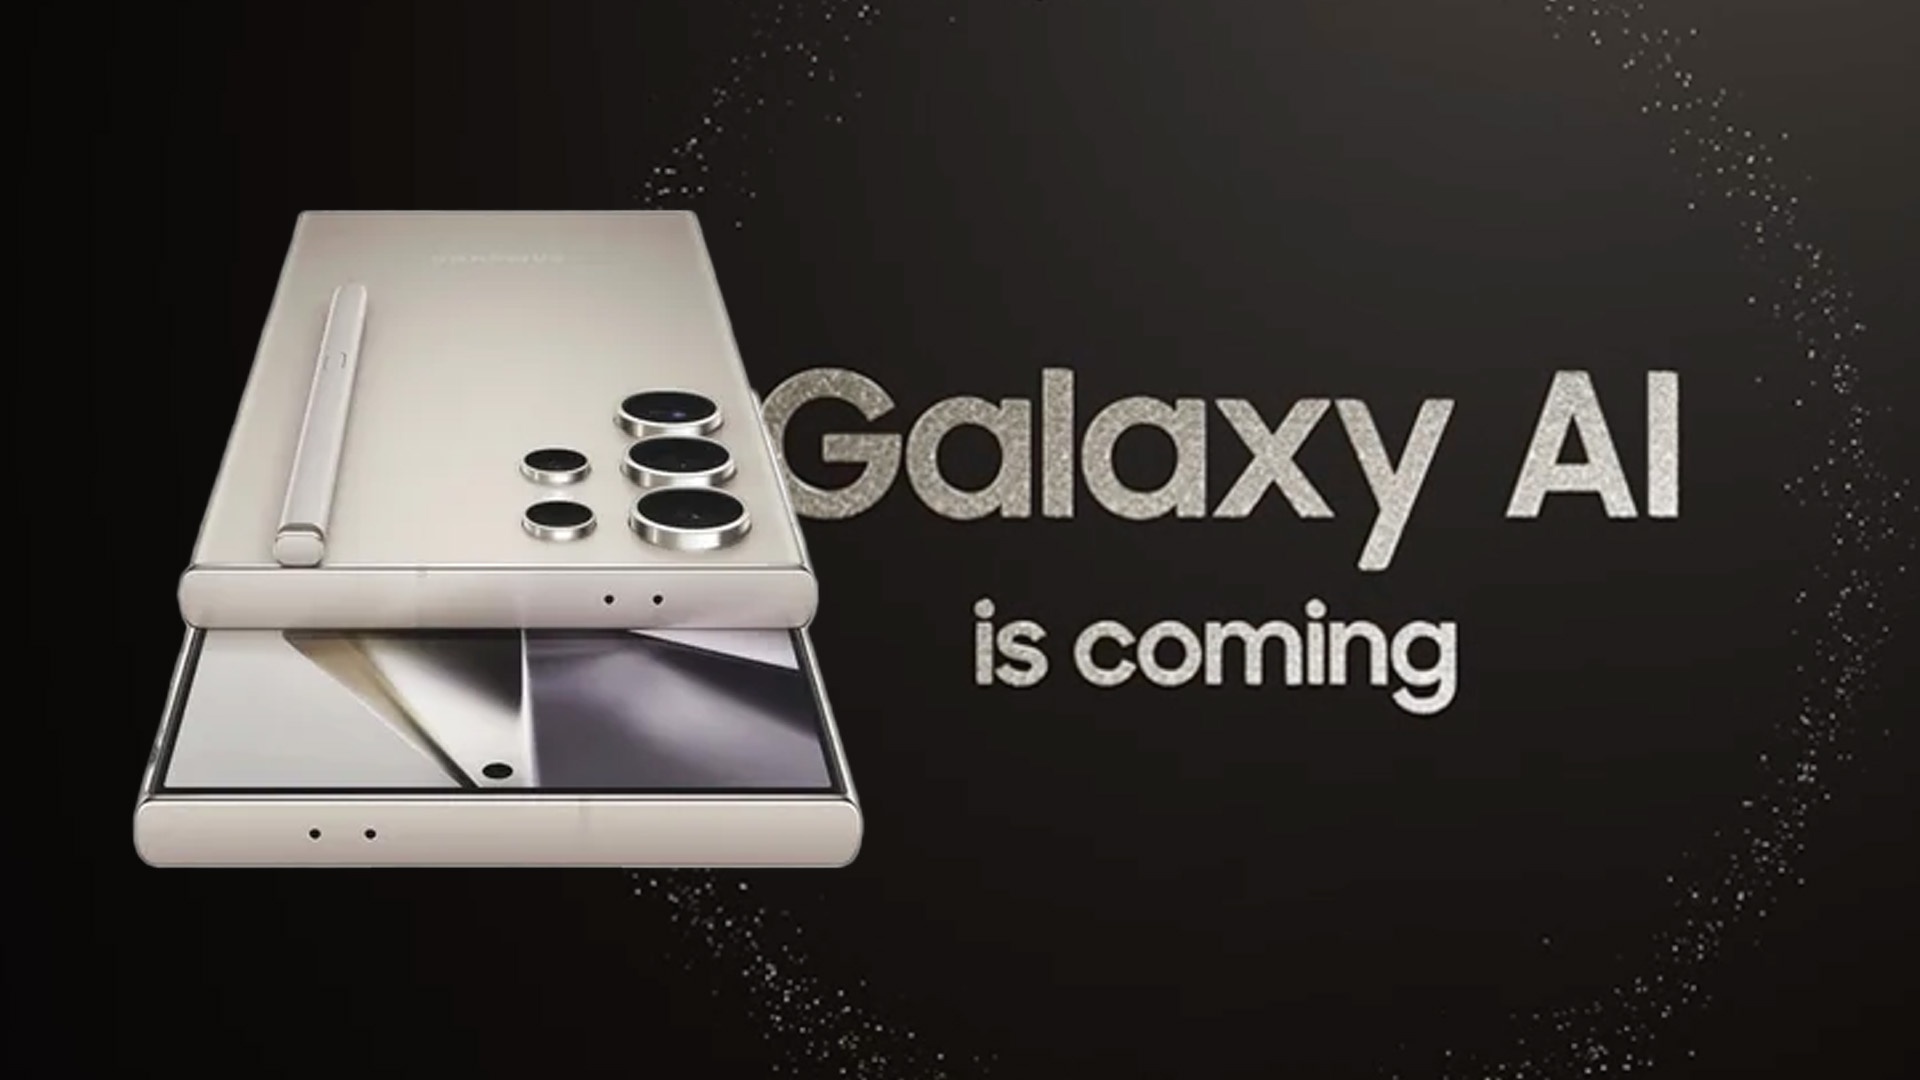 Samsung Galaxy S24 Ultra: Alle Leaks im Überblick